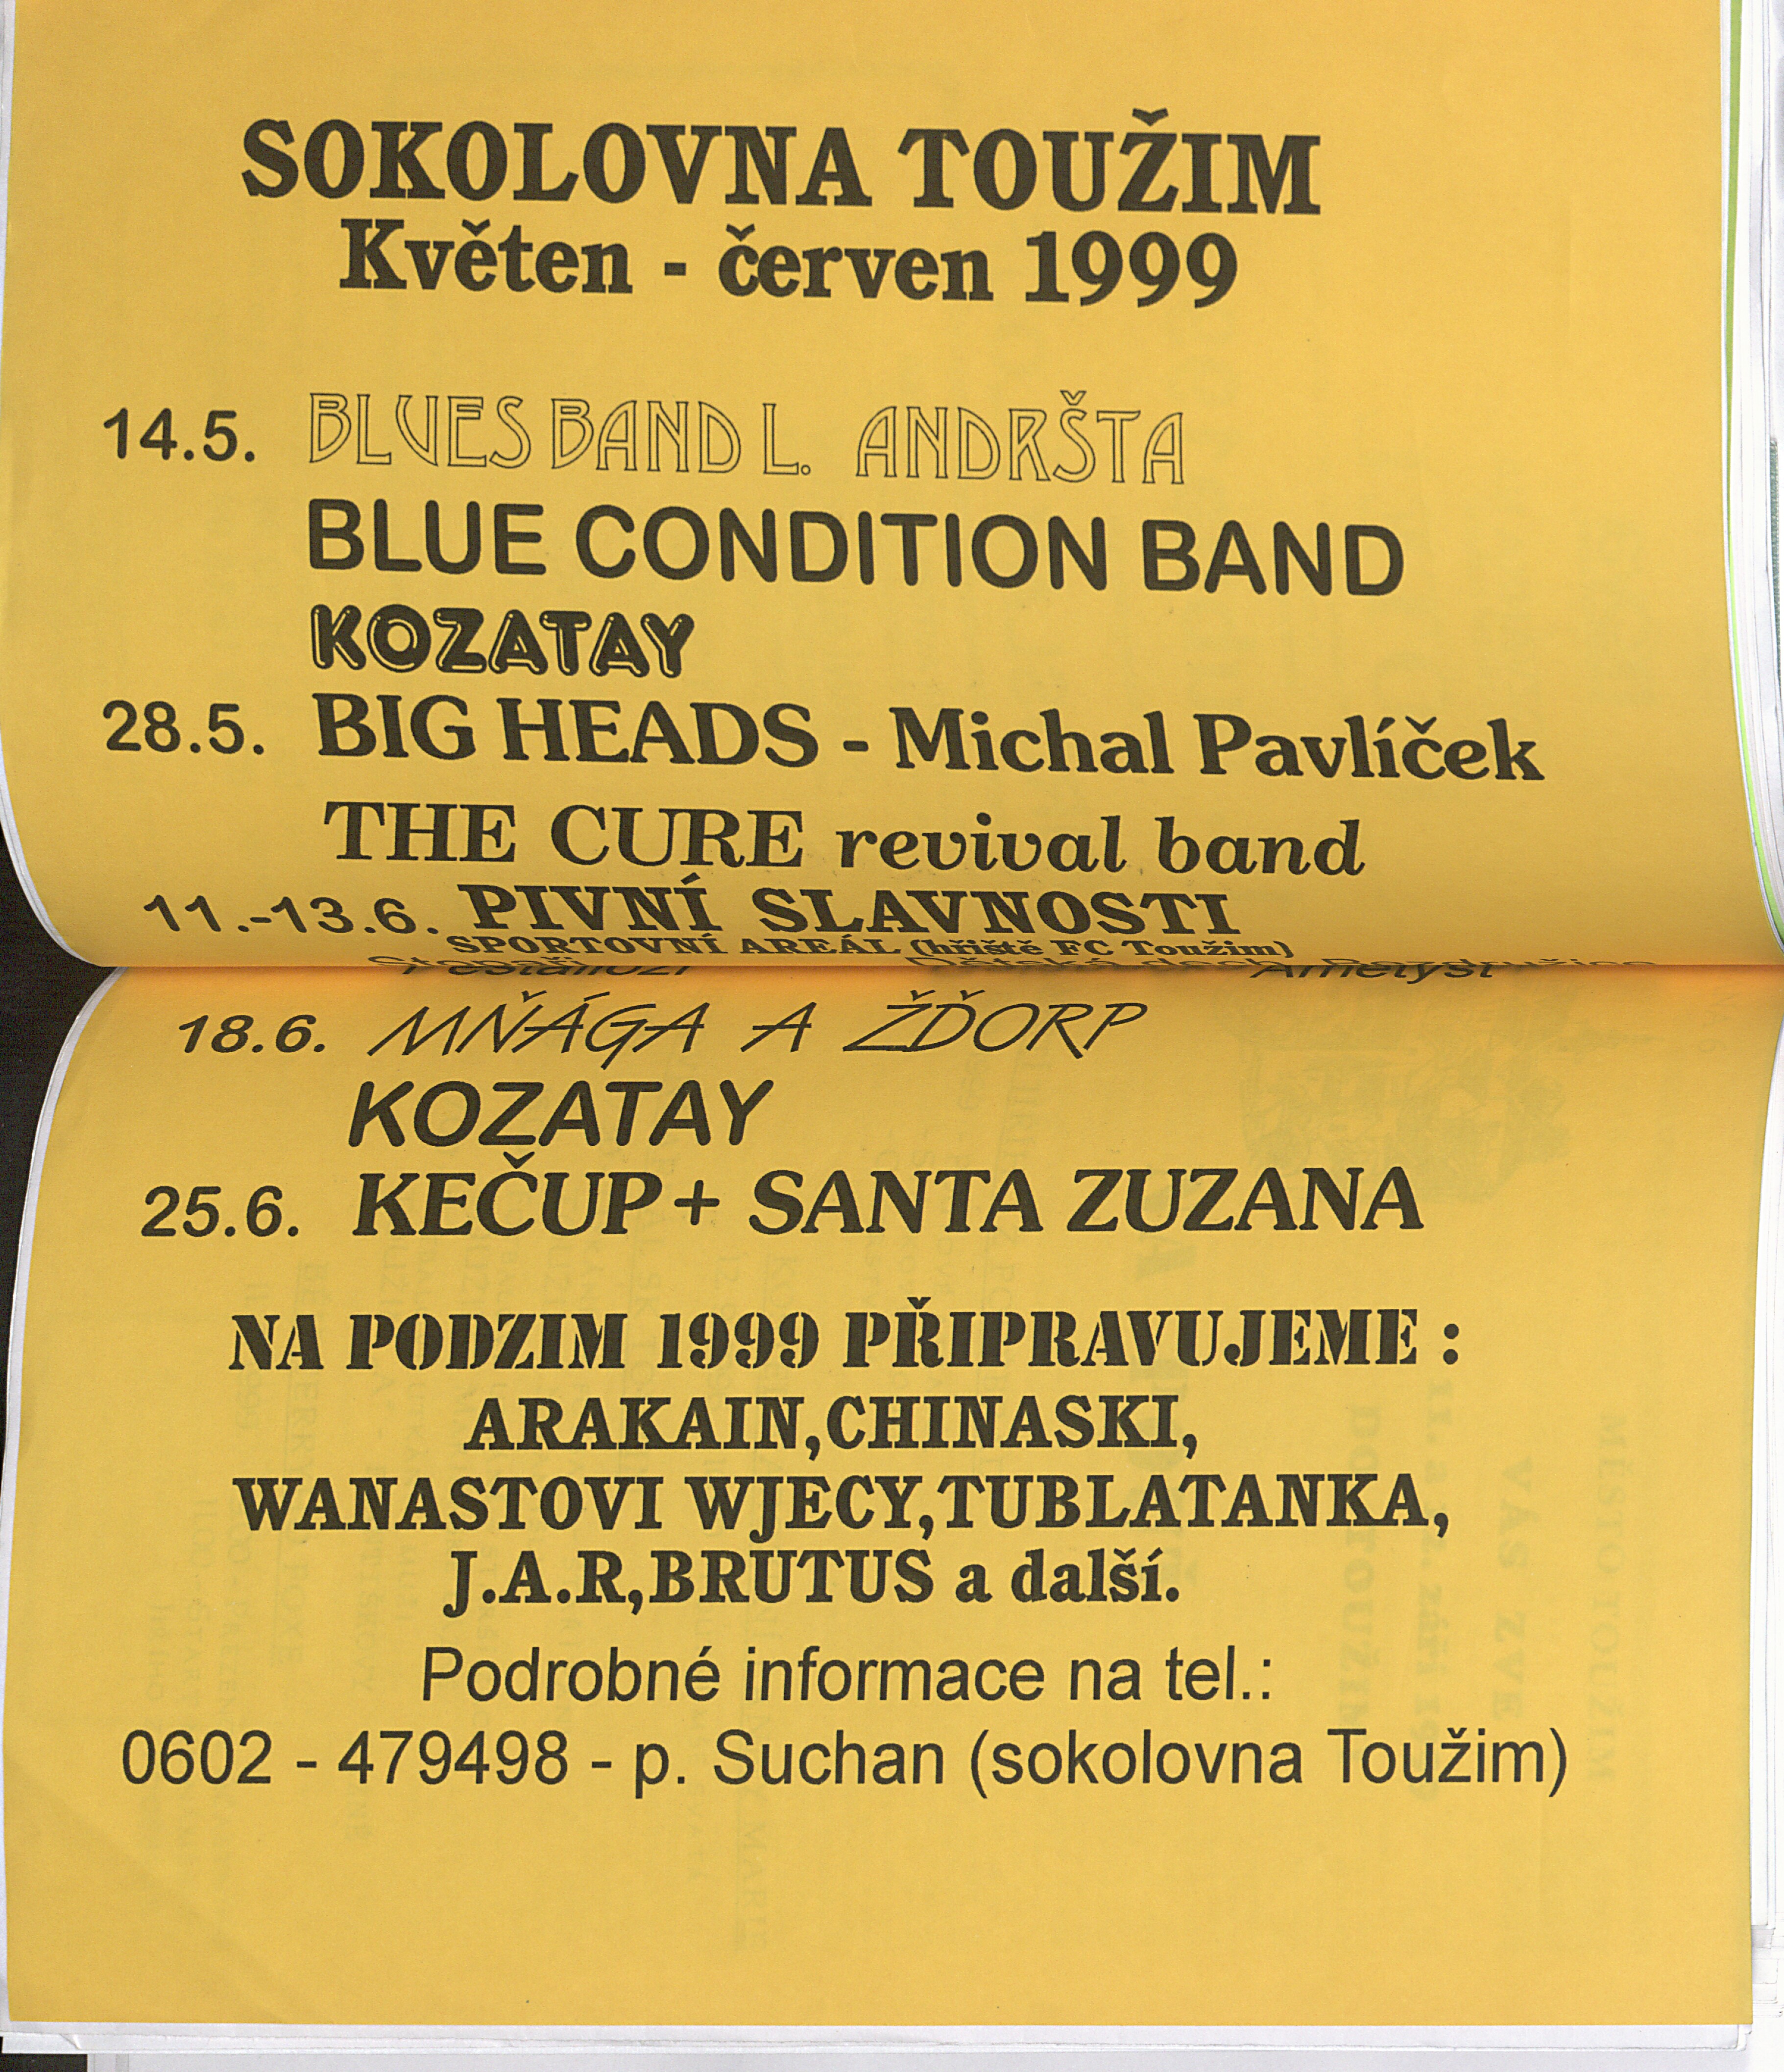 165. soap-kv_01822_mesto-touzim-priohy-1997-2000_1660